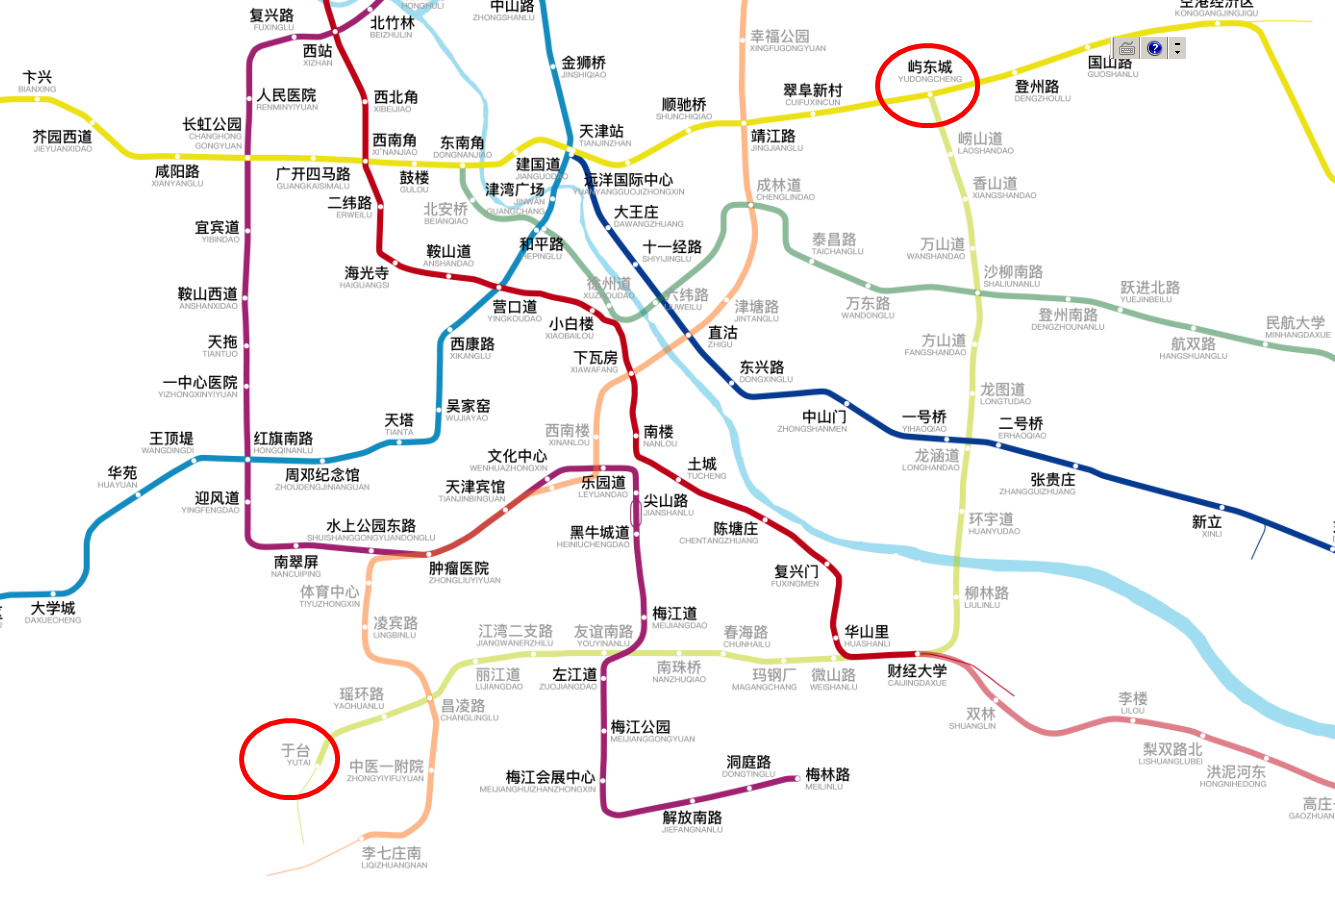 天津地铁10号线的建设进度比较理想,共有16个车站有了施工信息